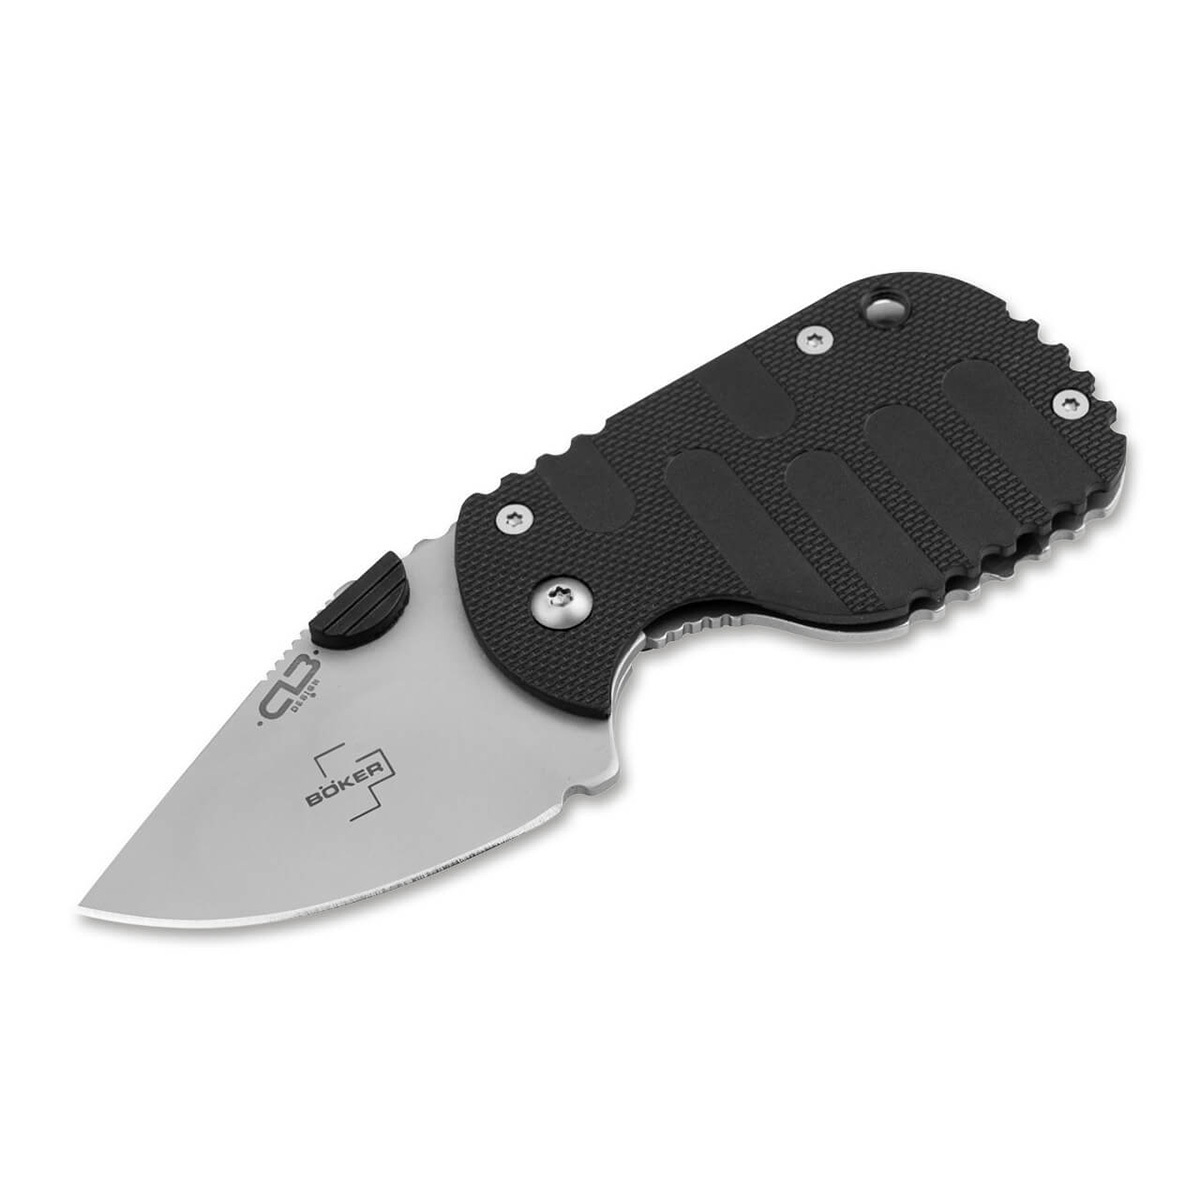 Складной нож Boker Subcom 2.0 Black, сталь D2, рукоять zytel/сталь